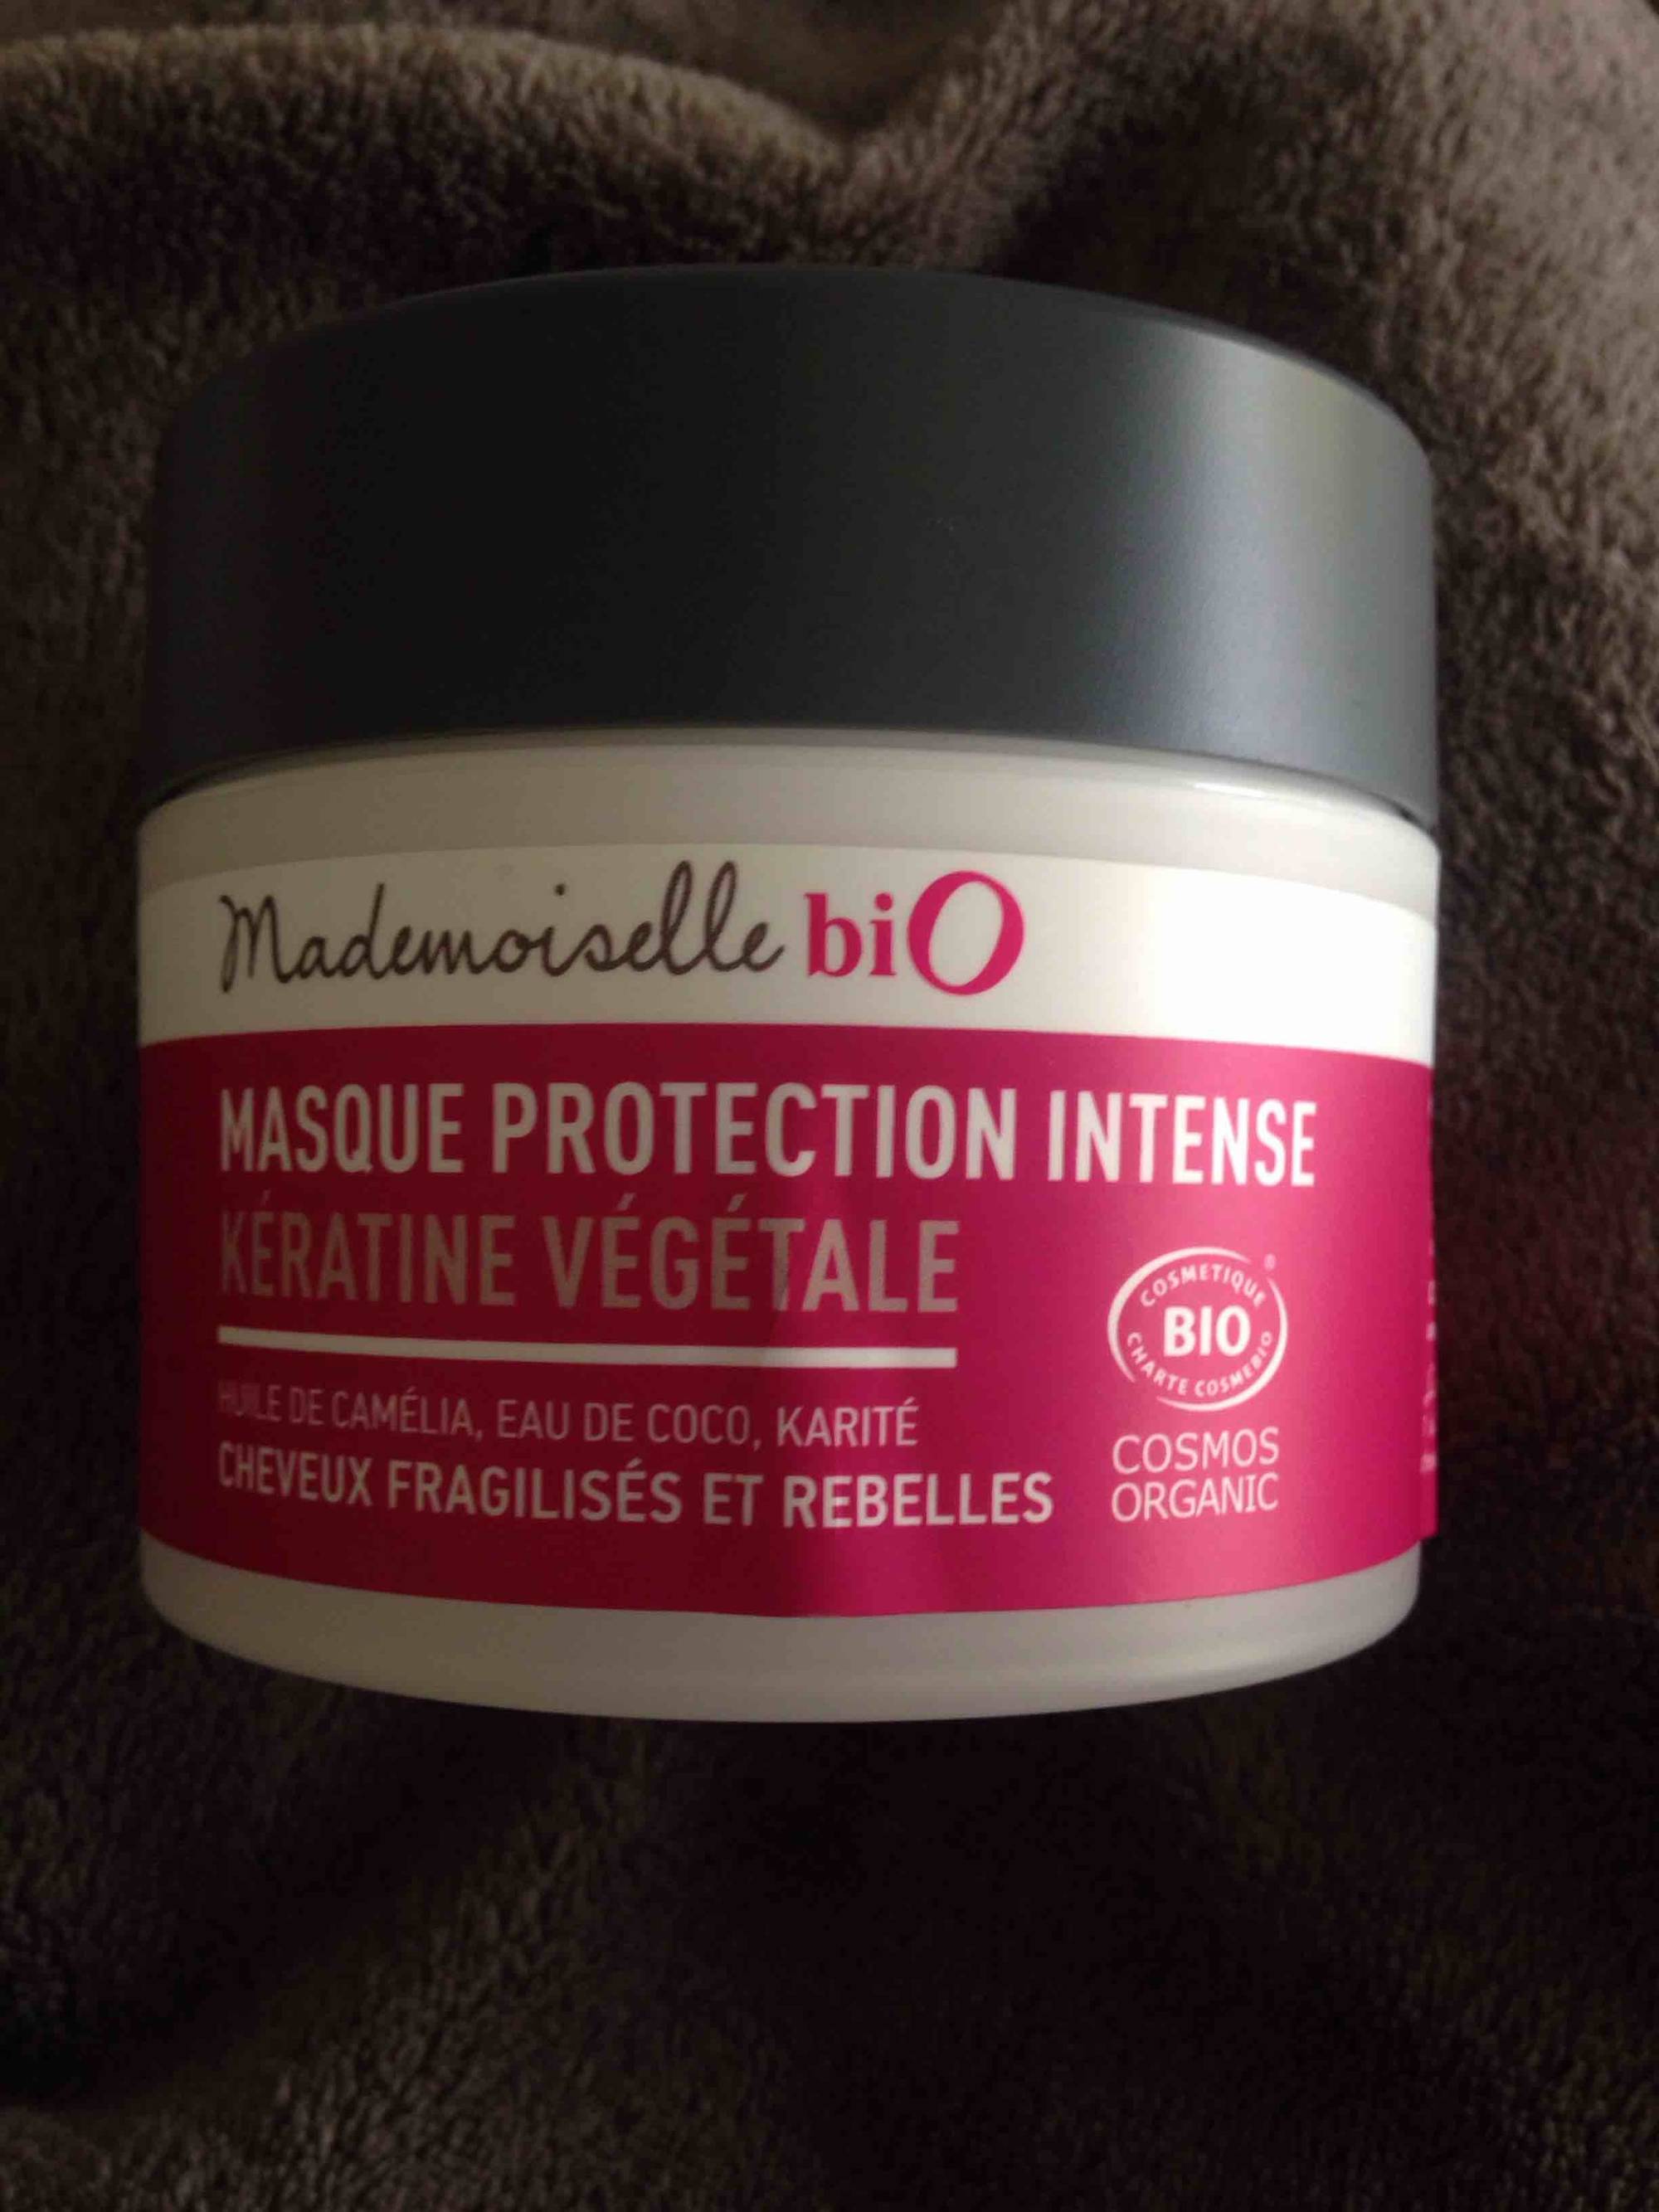 MADEMOISELLE BIO - Masque protection intense - Kératine végétale